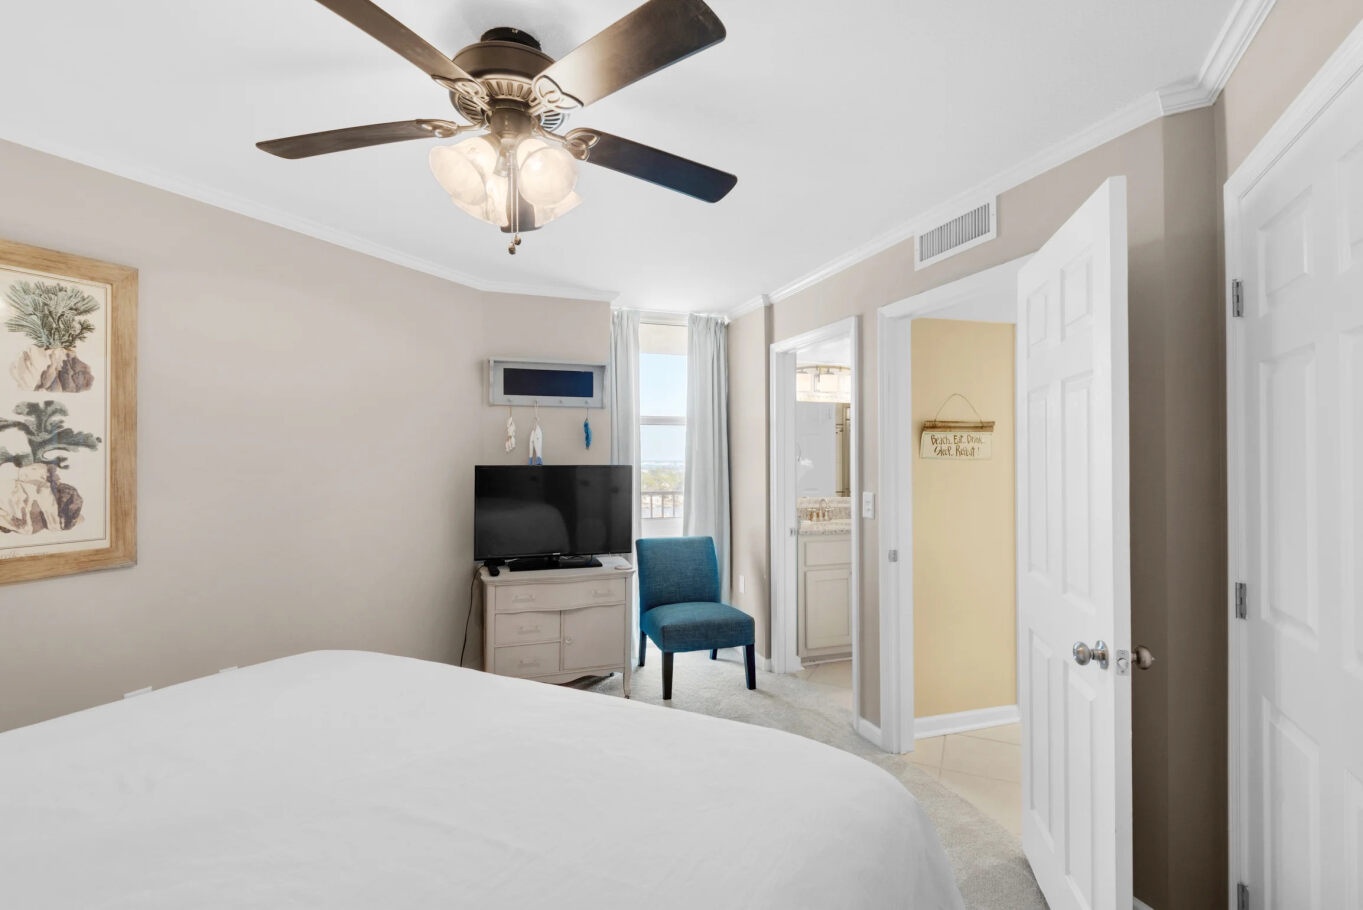 A second king suite includes a private en suite, Smart TV, & ceiling fan